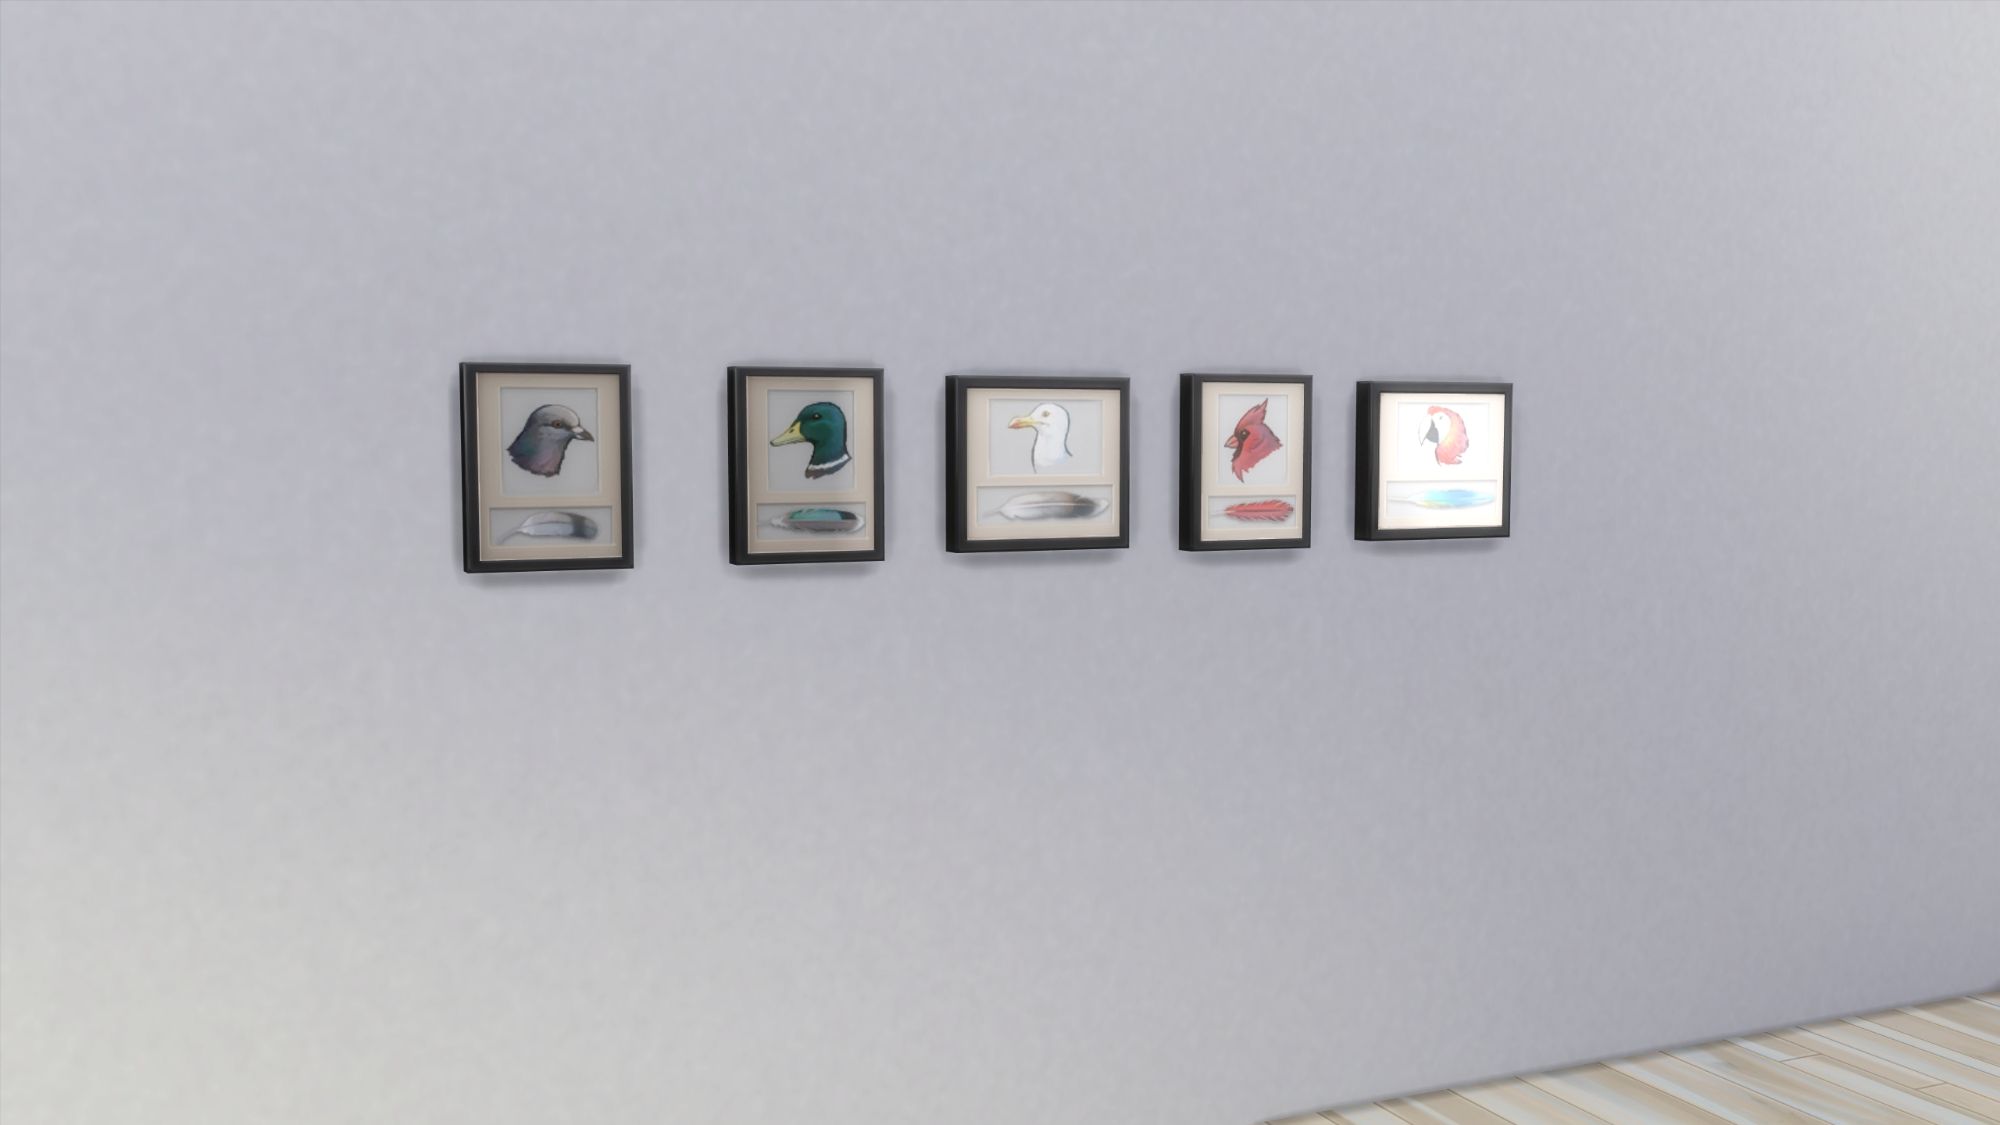 Изображение выставки перьев из Sims 4, на которой на стене висят таблички с изображением пяти разных птиц и их перьев.